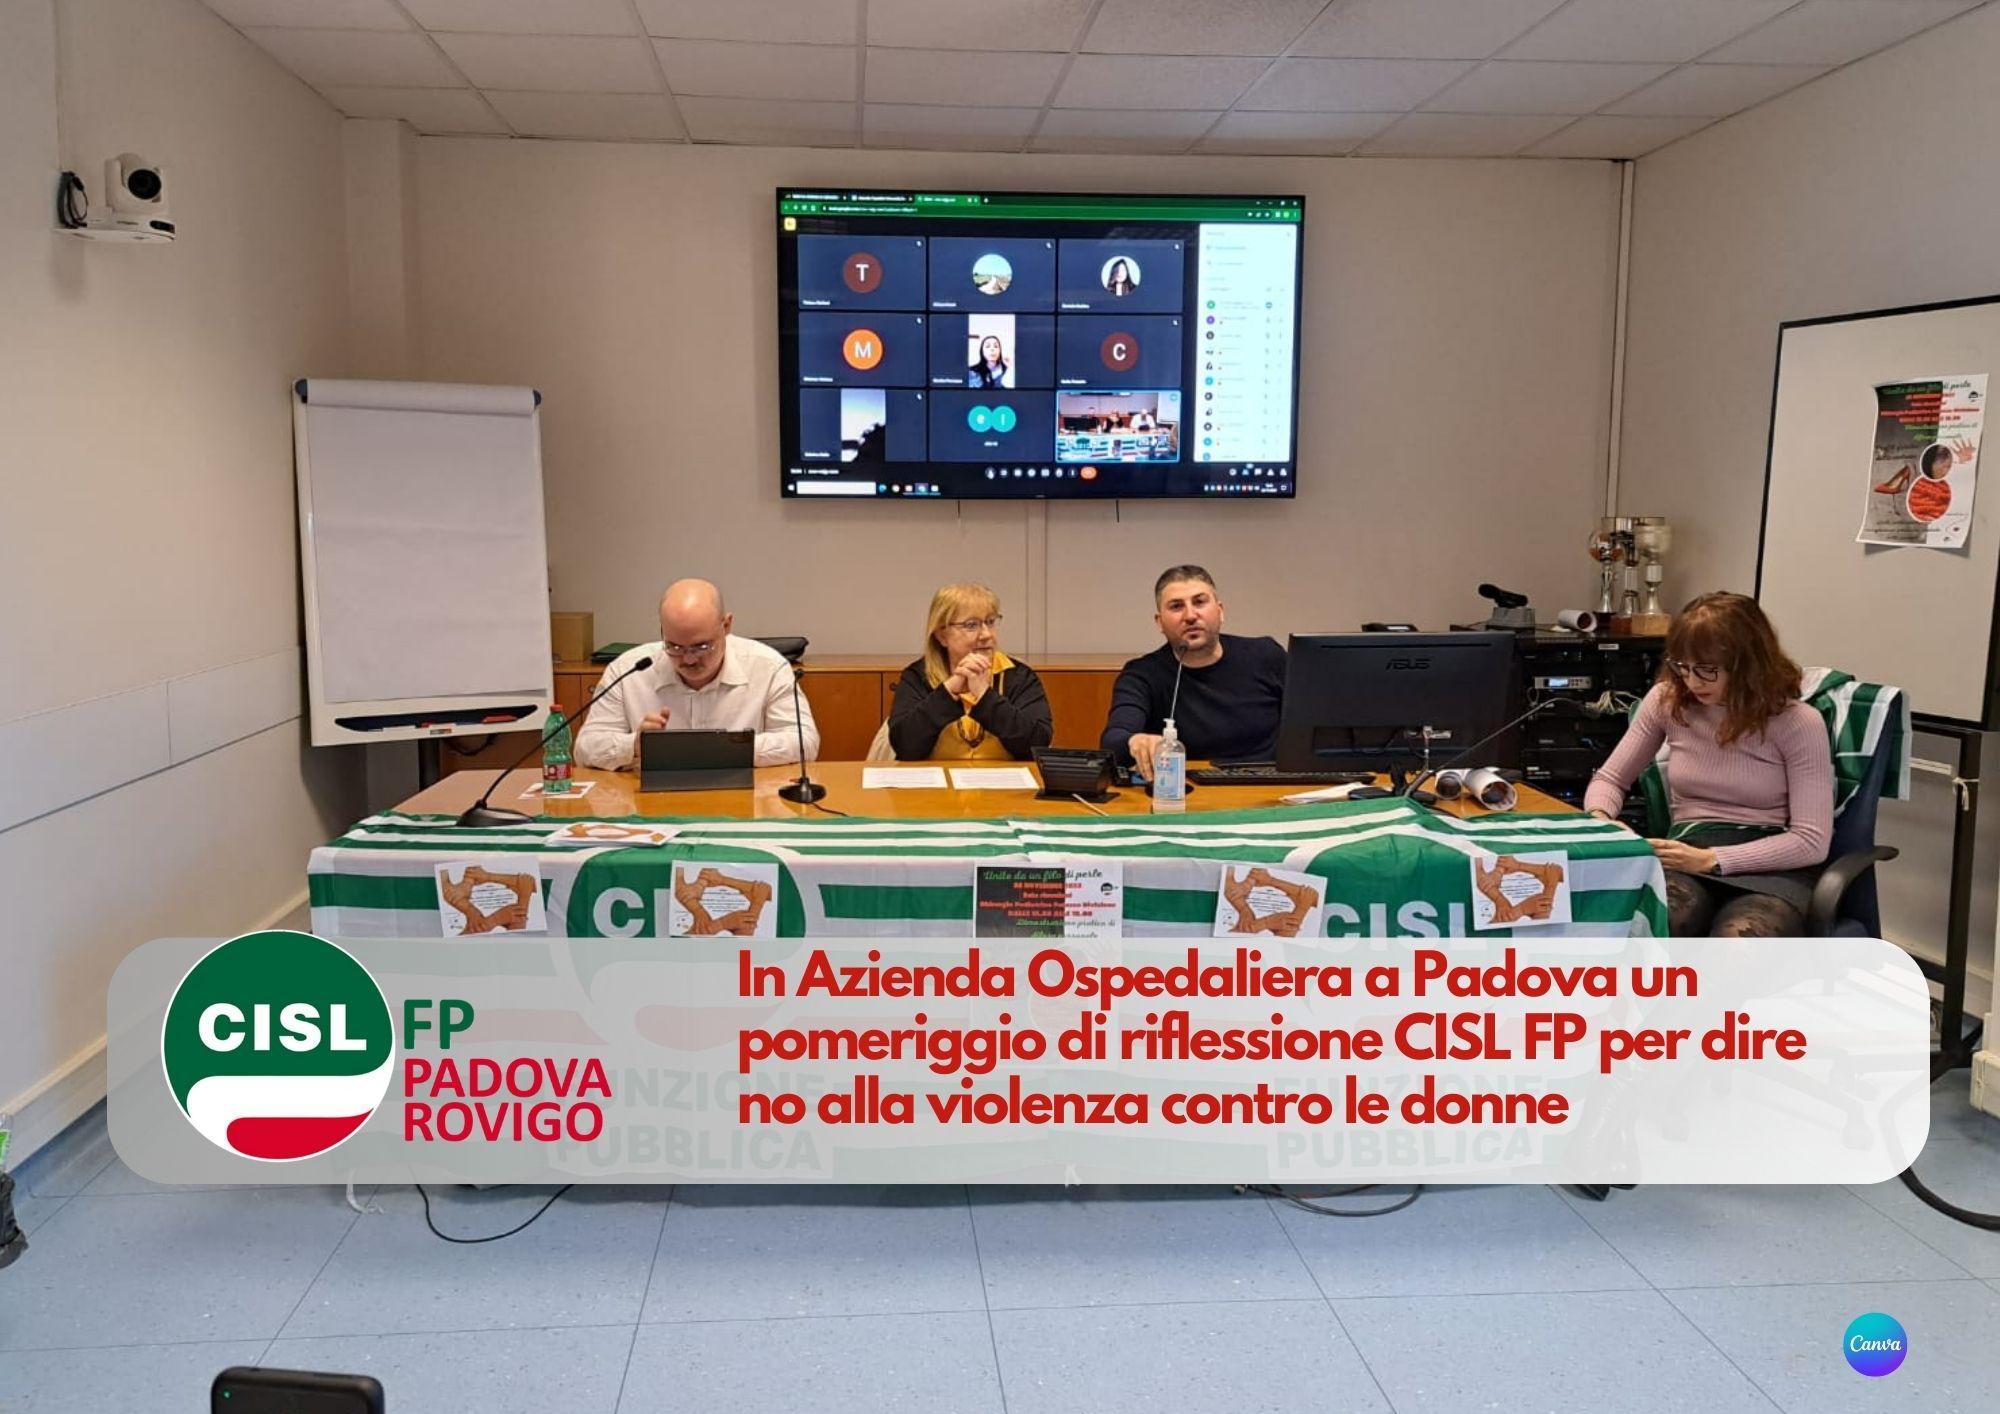 CISL FP Padova Rovigo. In Azienda Ospedaliera a Padova un pomeriggio per dire no alla violenza contro le donne